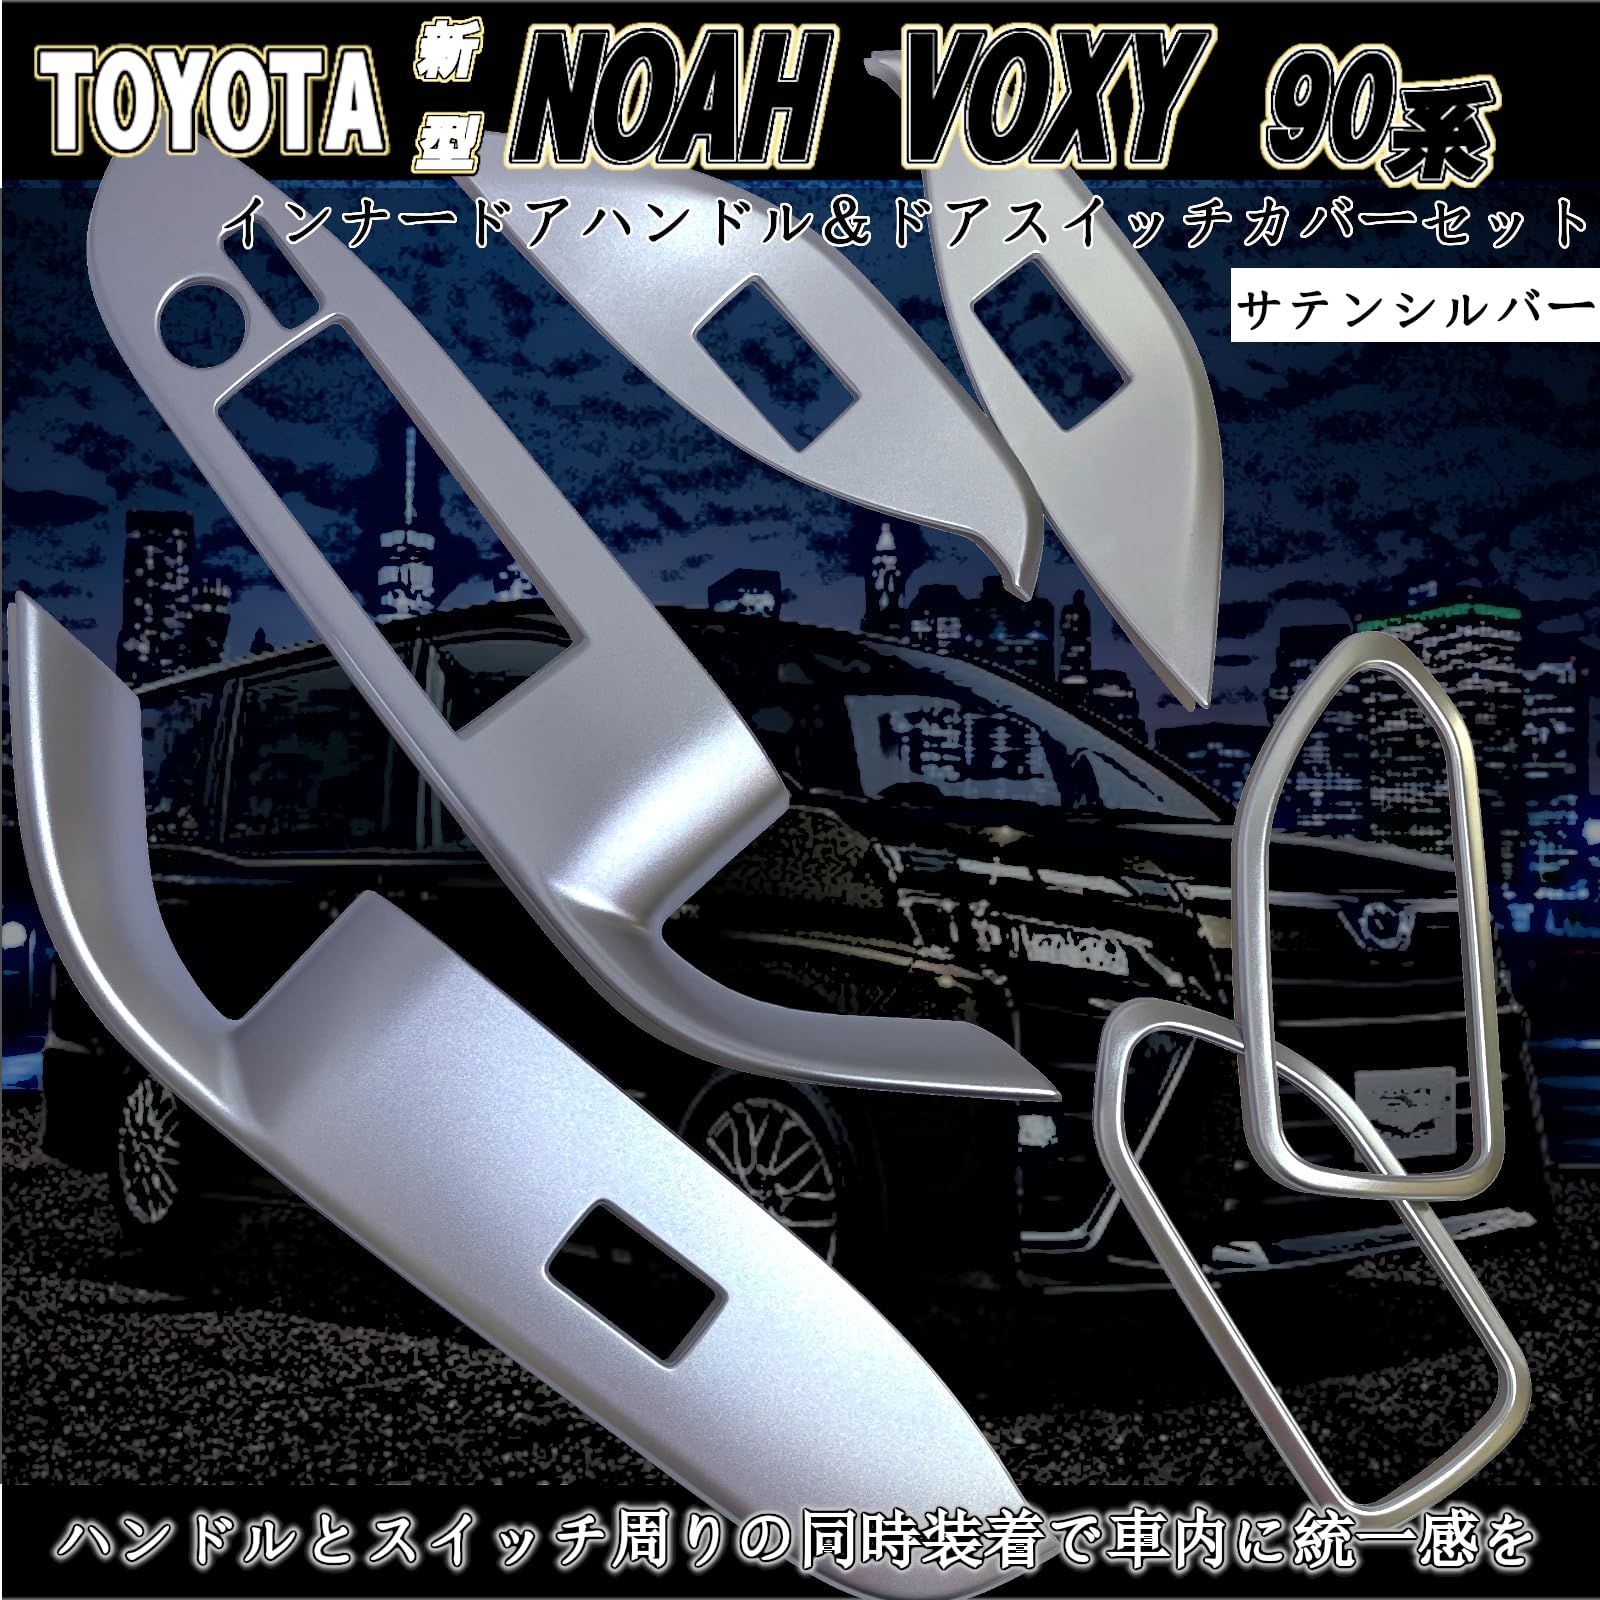 新型 ノア ヴォクシー 90系 アクセサリー 内装 インナードアハンドルカバー ドアスイッチカバー セット( ピアノブラック)